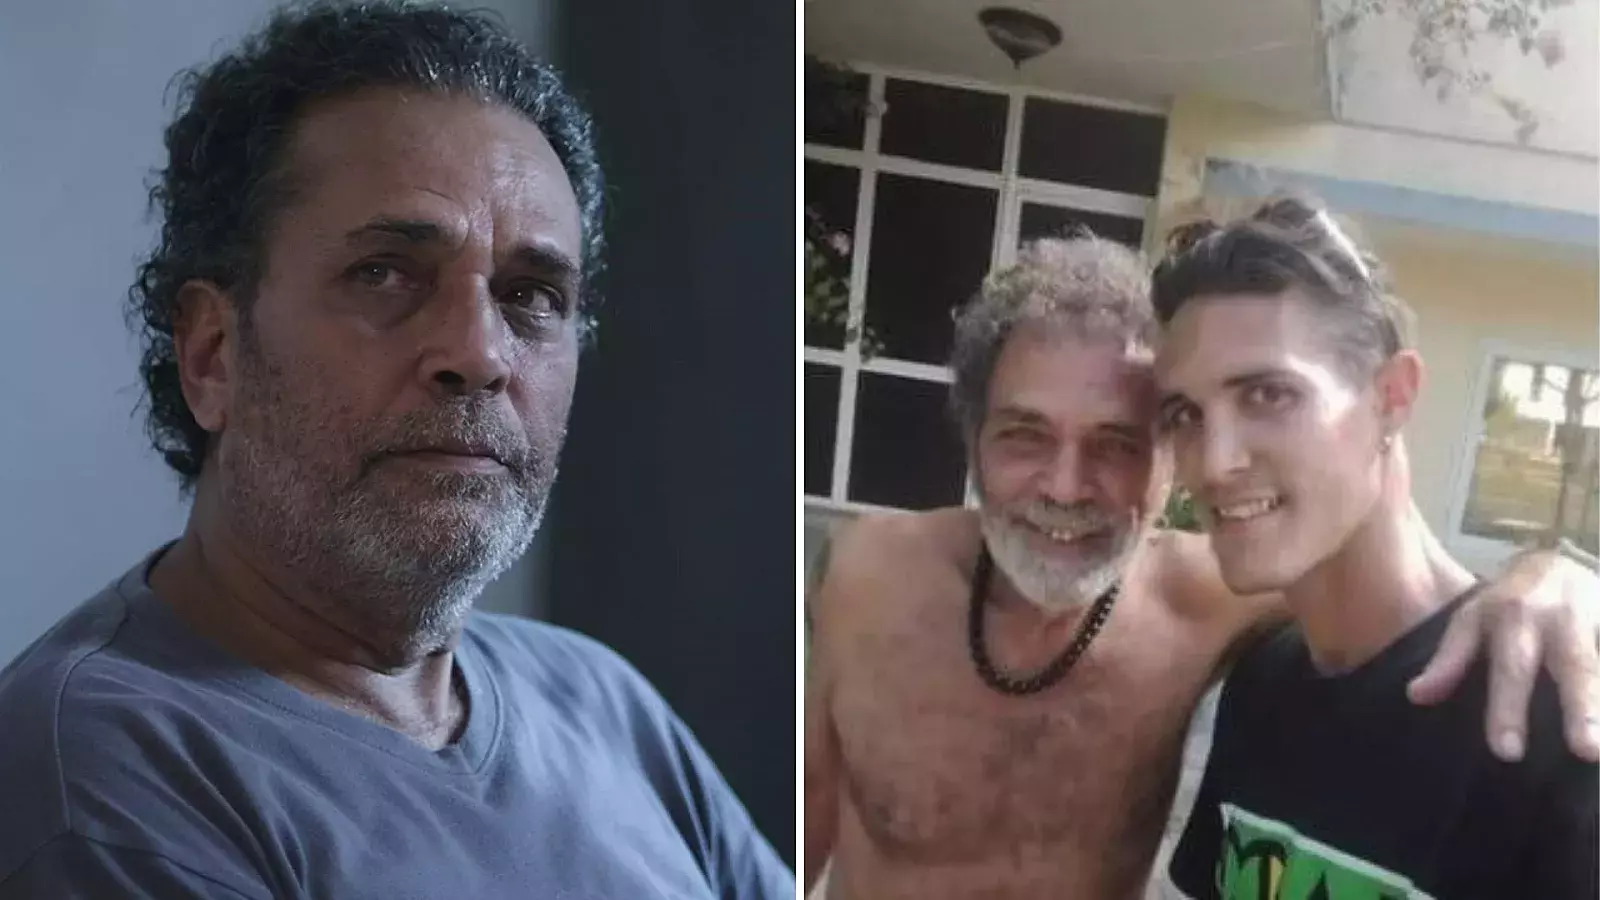 Luis Alberto García, actor cubano y el joven que le devolvió el celular perdido